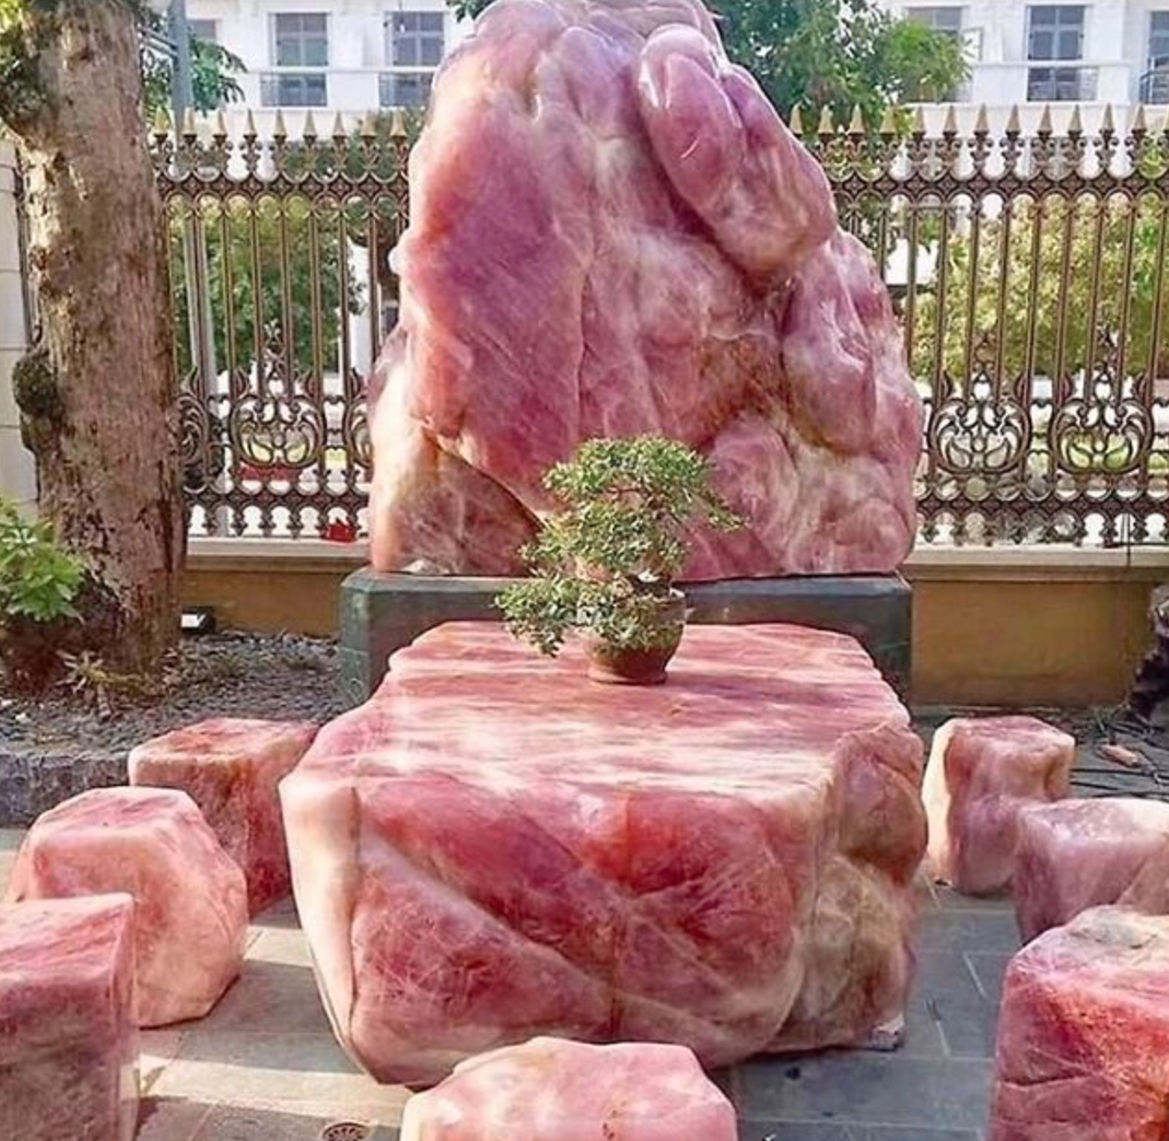 horrible designs - rose quartz meat